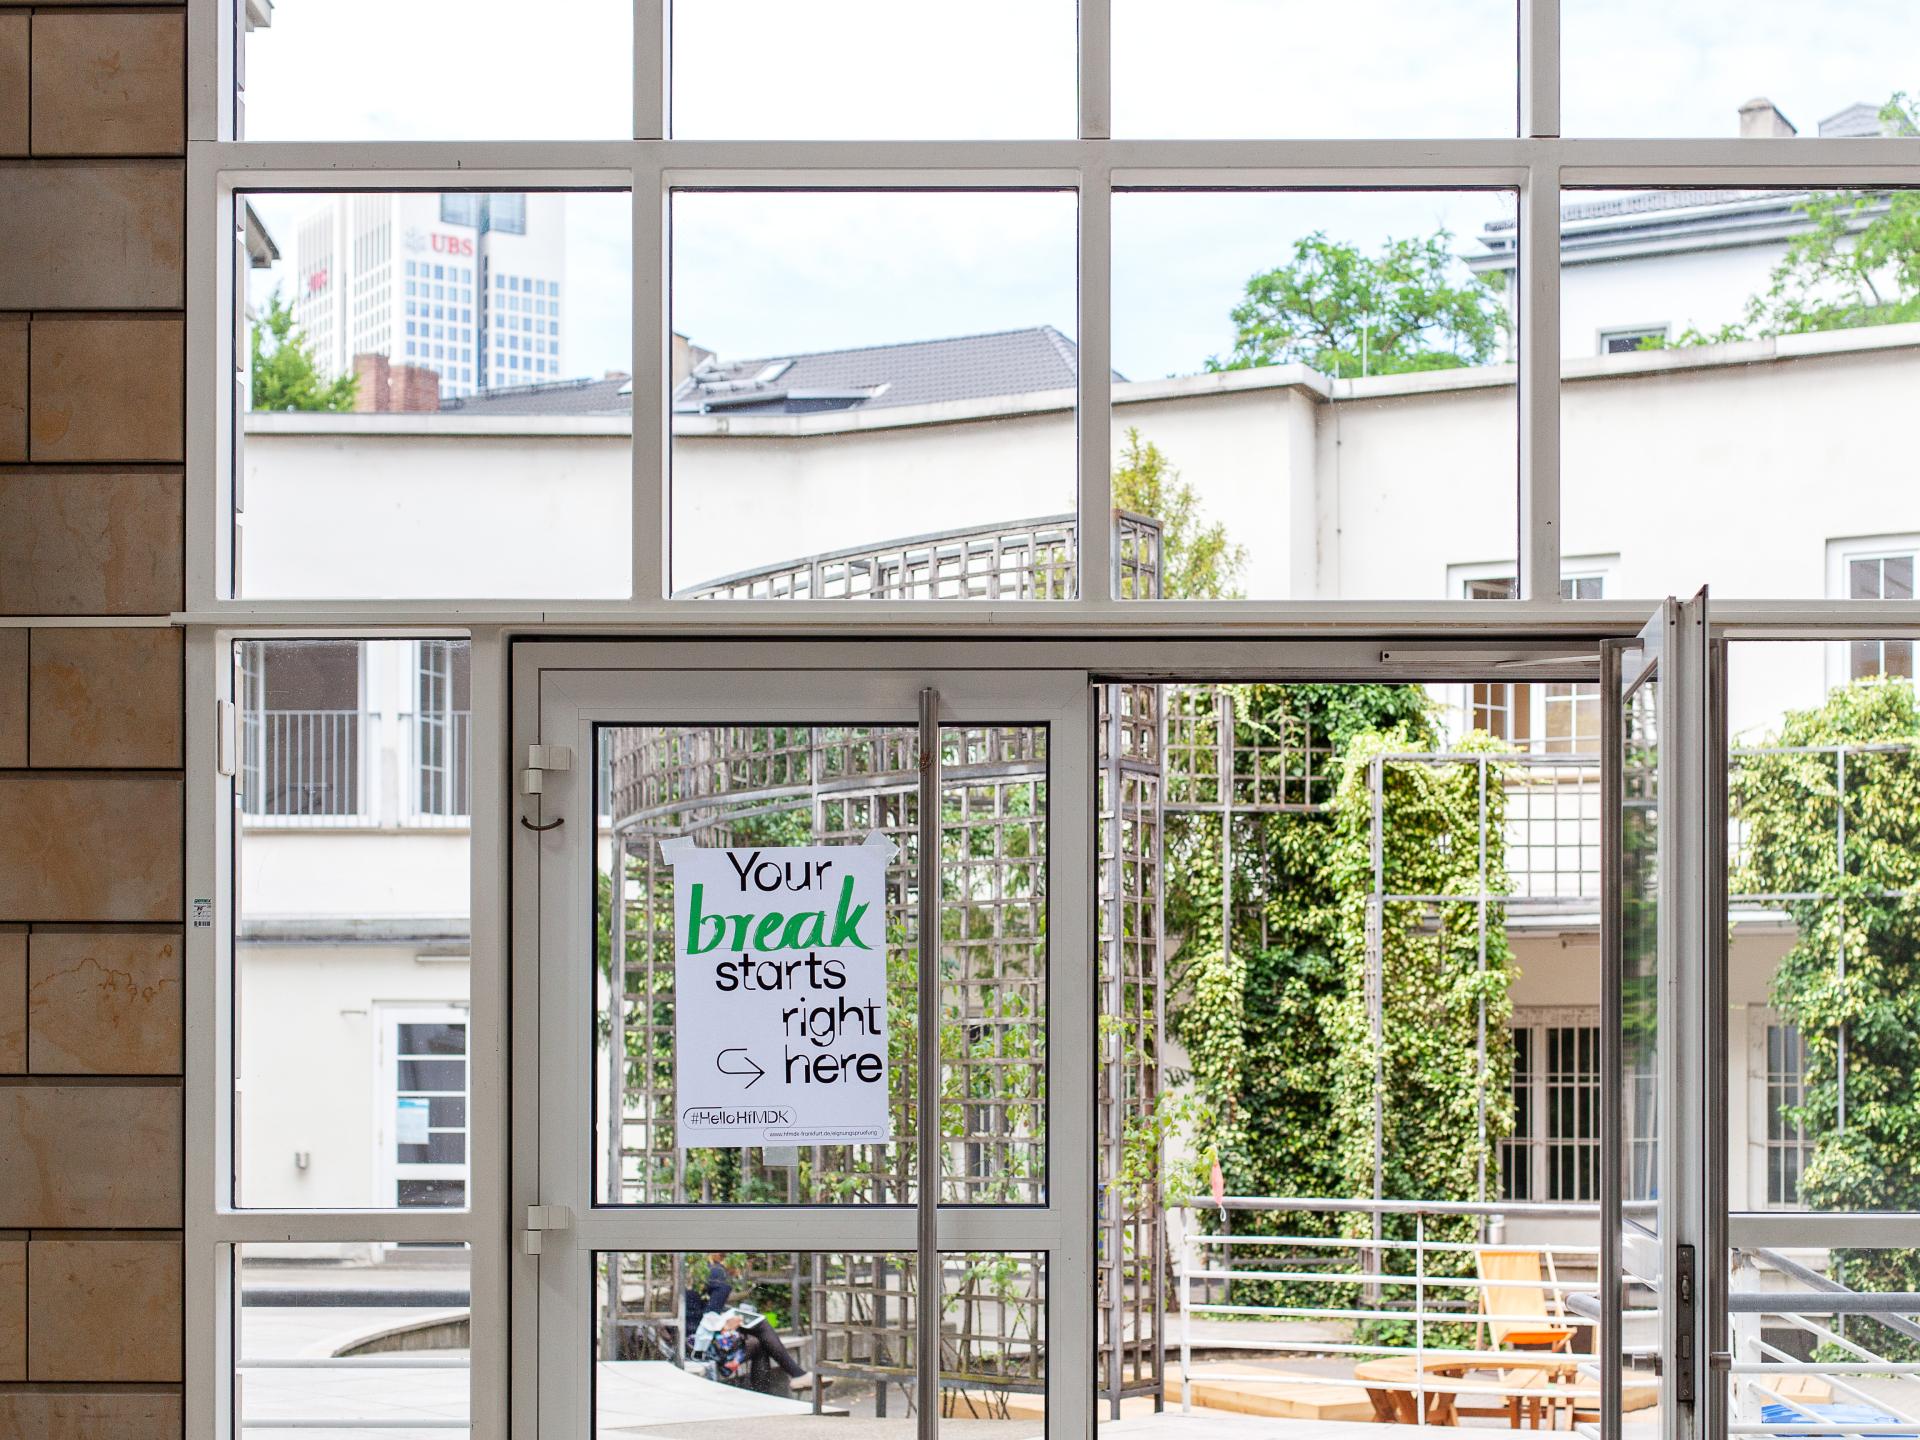 Offene Glastür zum Innenhof der HfMDK mit einem Plakat auf dem steht: Your Break starts right here.